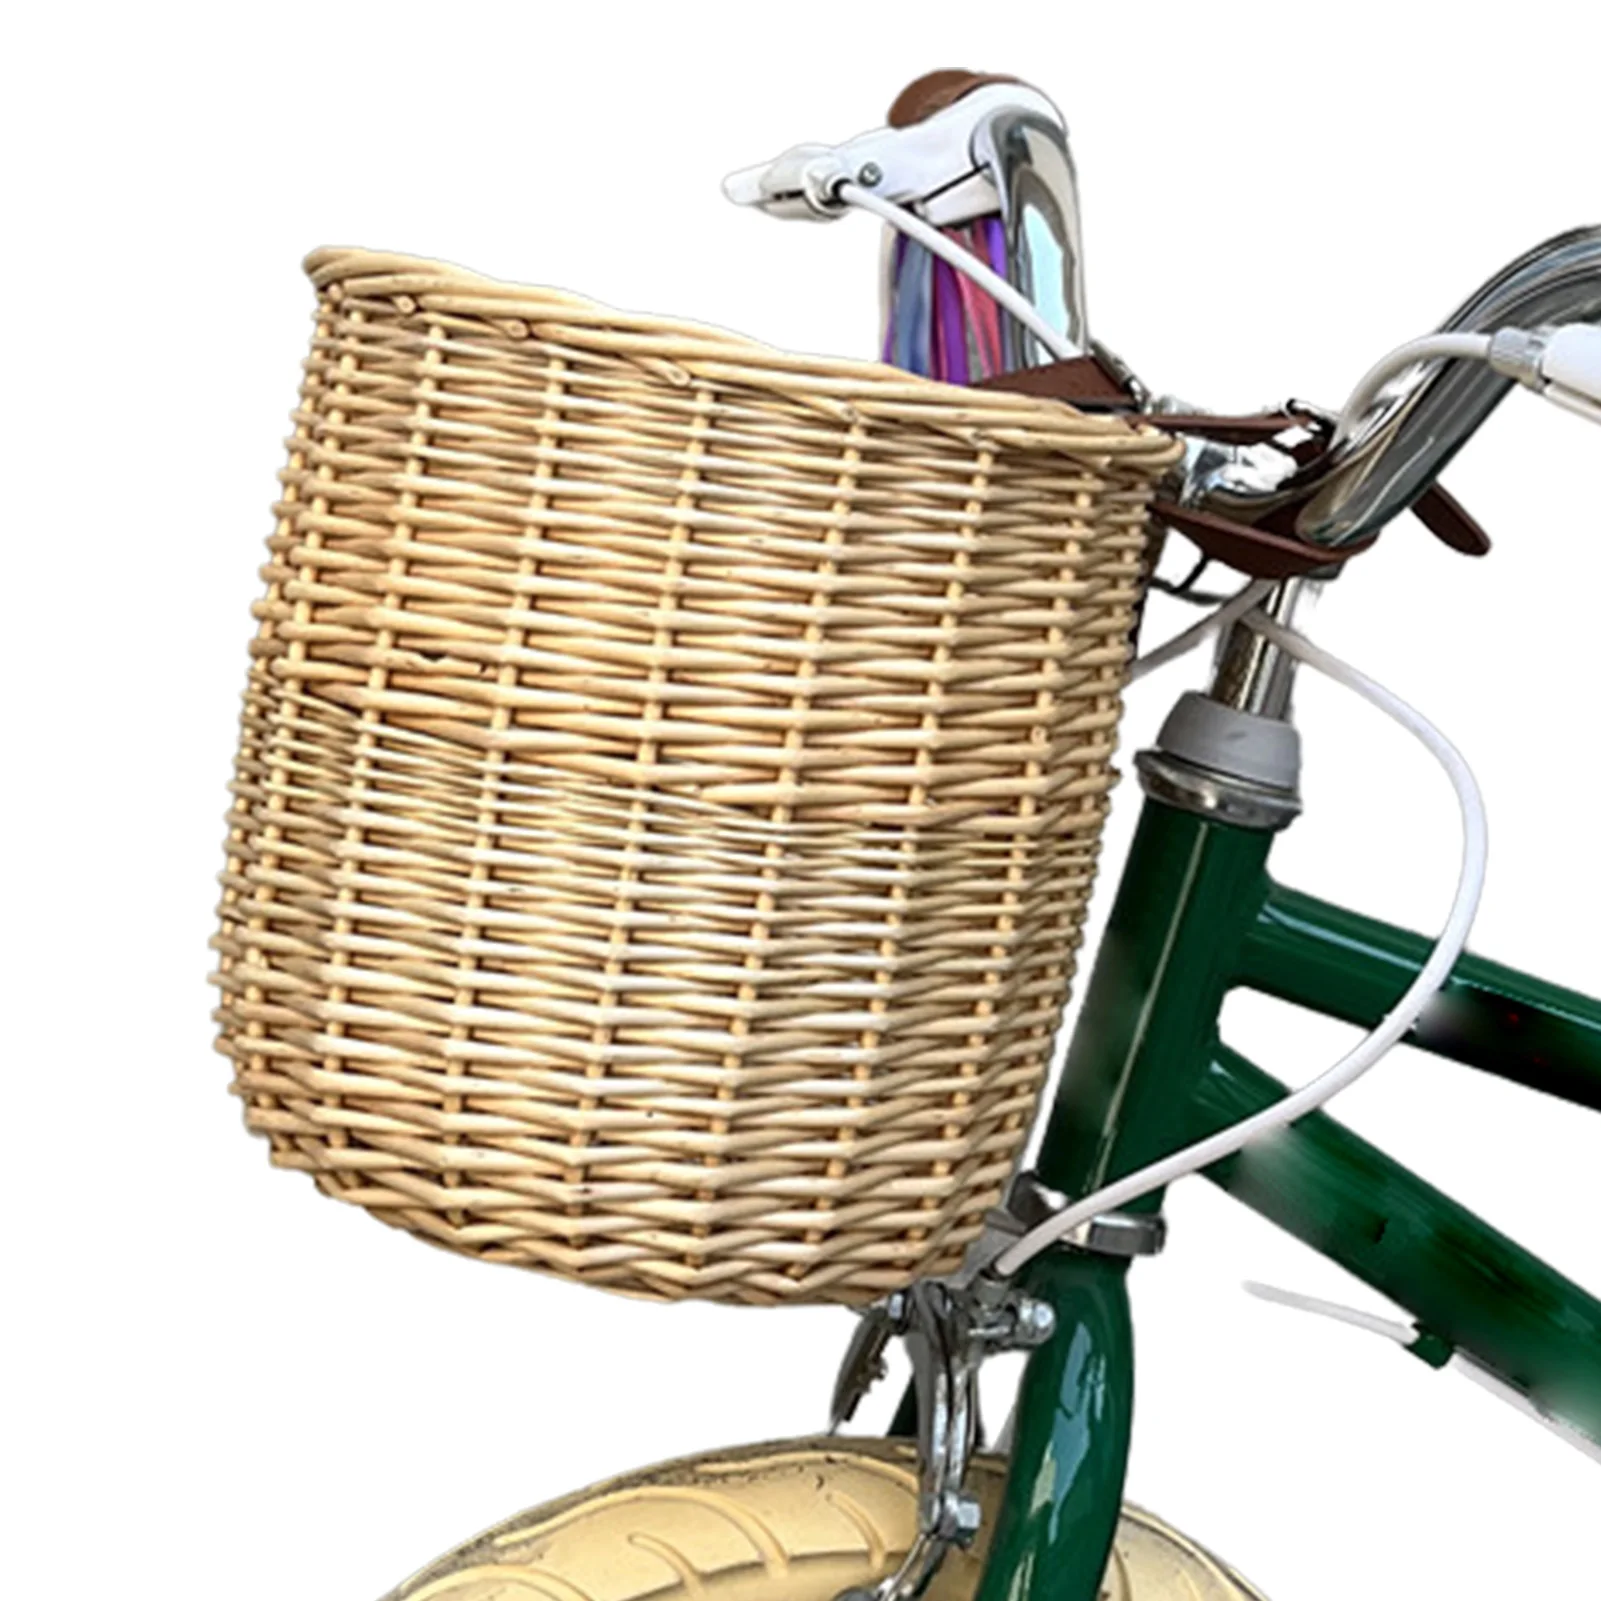 

Bike Basket Front Bike Front Handlebar Basket With Adjustable Buckles Natural Wicker Woven Basket With Adjustable Buckles Bike